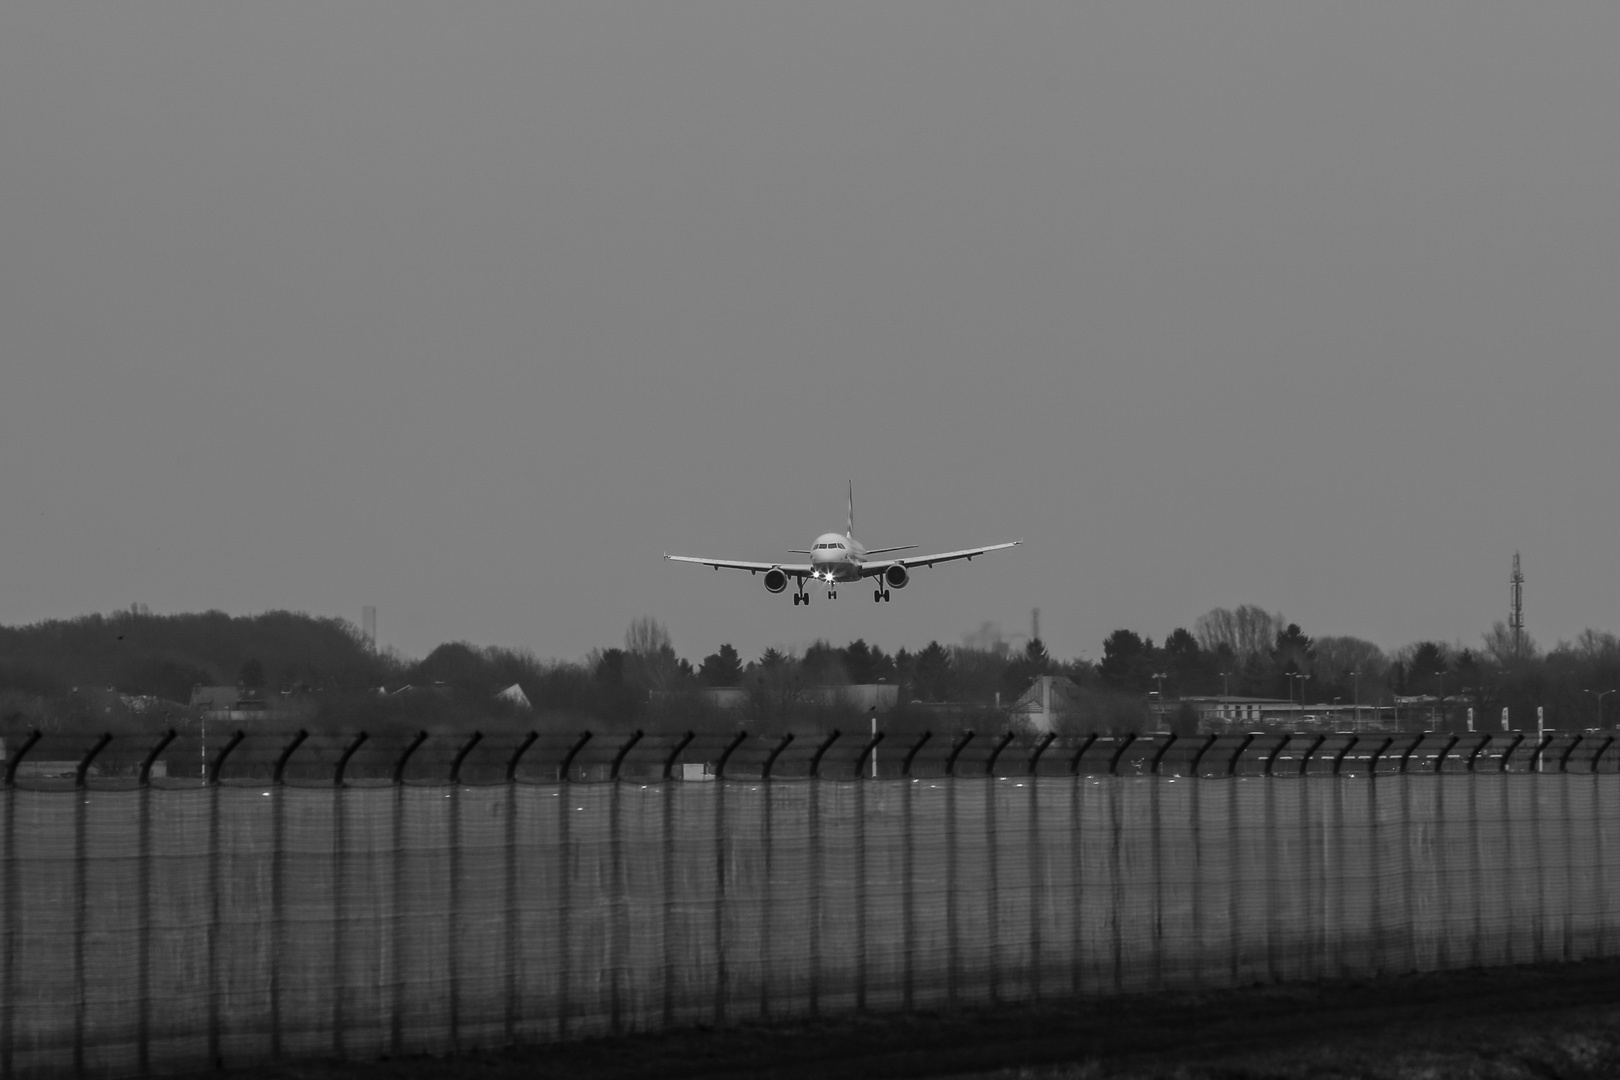 Flug 4U 2032 aus Stuttgart gelandet 16:30 in Bremen